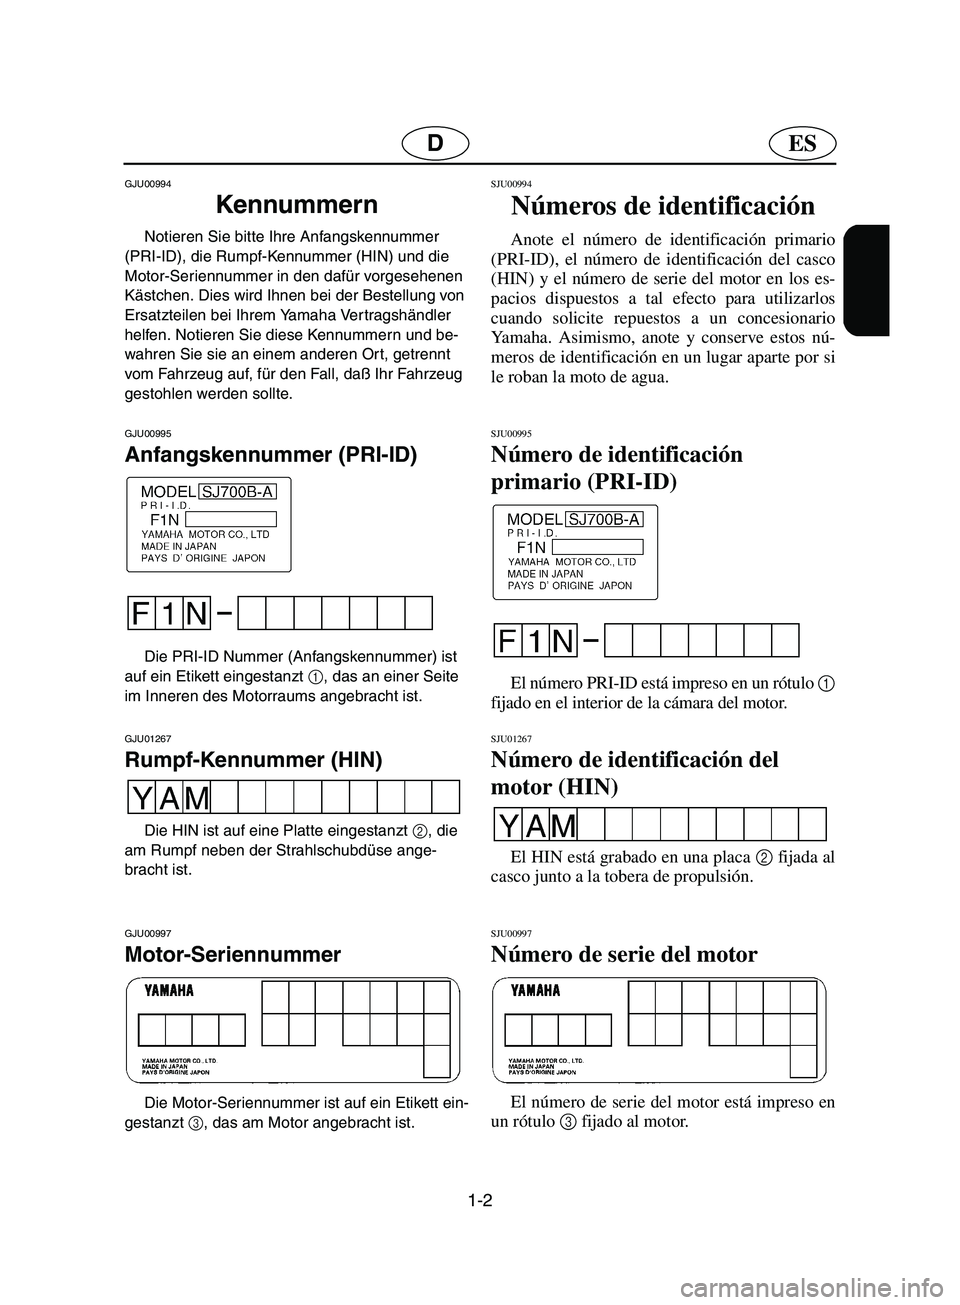 YAMAHA SUPERJET 2002  Betriebsanleitungen (in German) 1-2
ESD
GJU00994 
Kennummern  
Notieren Sie bitte Ihre Anfangskennummer 
(PRI-ID), die Rumpf-Kennummer (HIN) und die 
Motor-Seriennummer in den dafür vorgesehenen 
Kästchen. Dies wird Ihnen bei der 